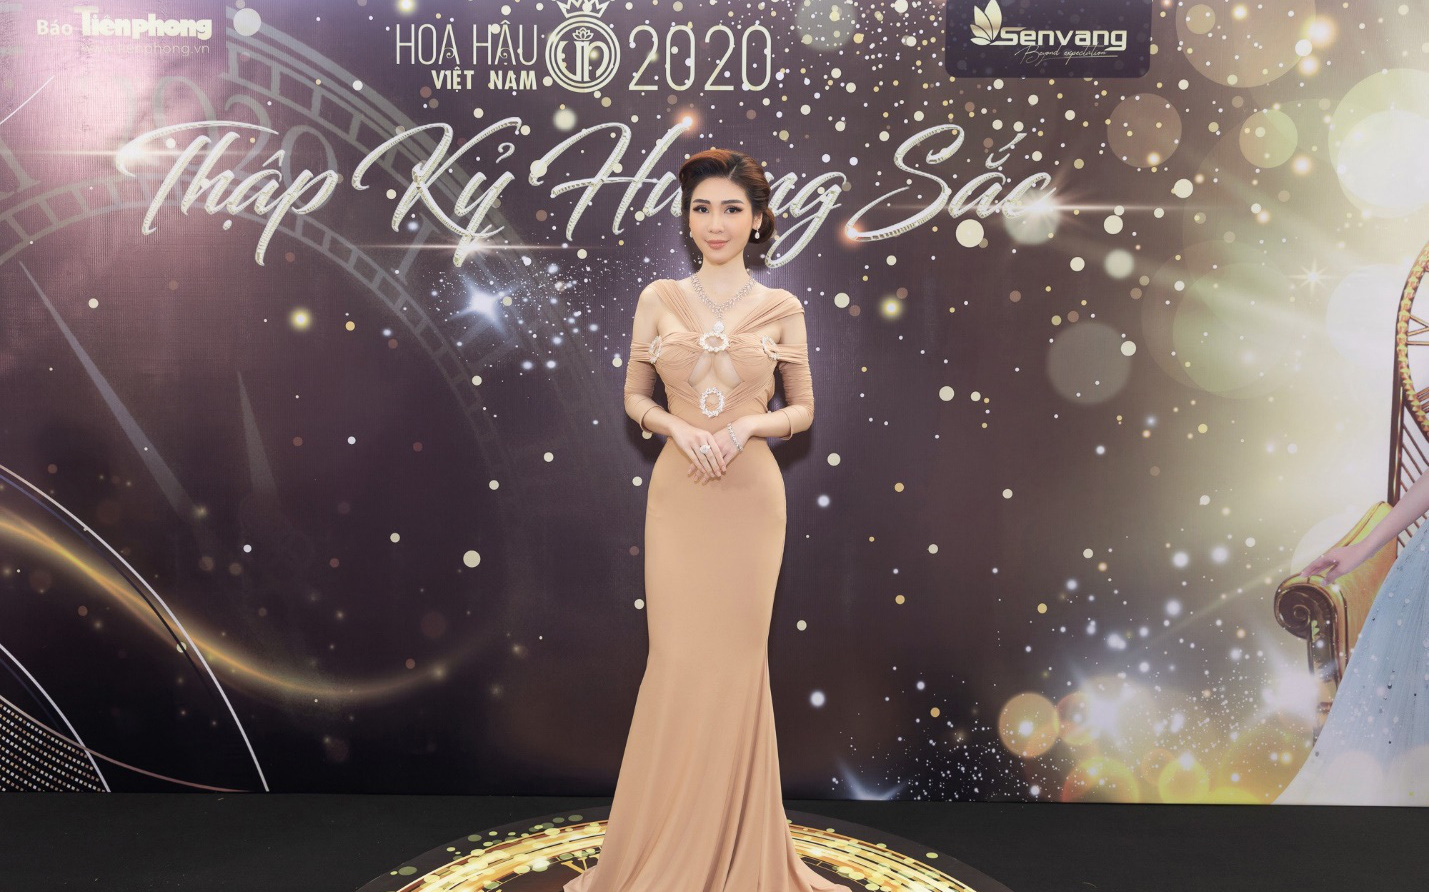 CEO Lâm Ngân diện đầm dạ hội, trang sức 20 tỷ tại họp báo chung kết Hoa hậu Việt Nam 2020